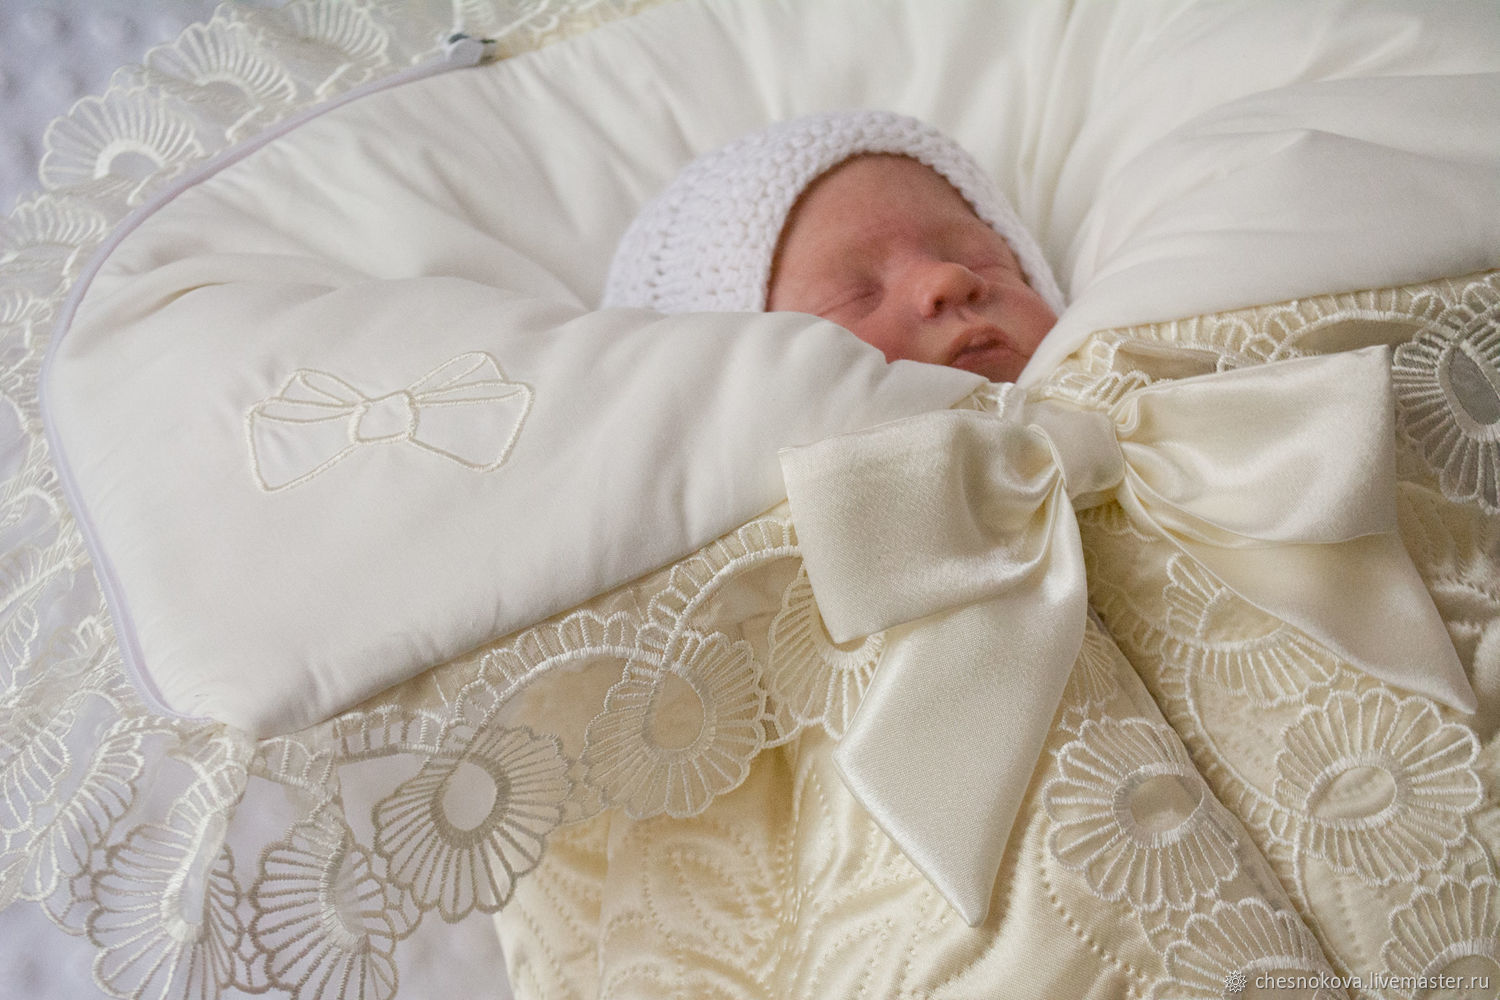 Размер детского одеяла для новорожденных в кроватку, на выписку, а также для детей старшего возраста